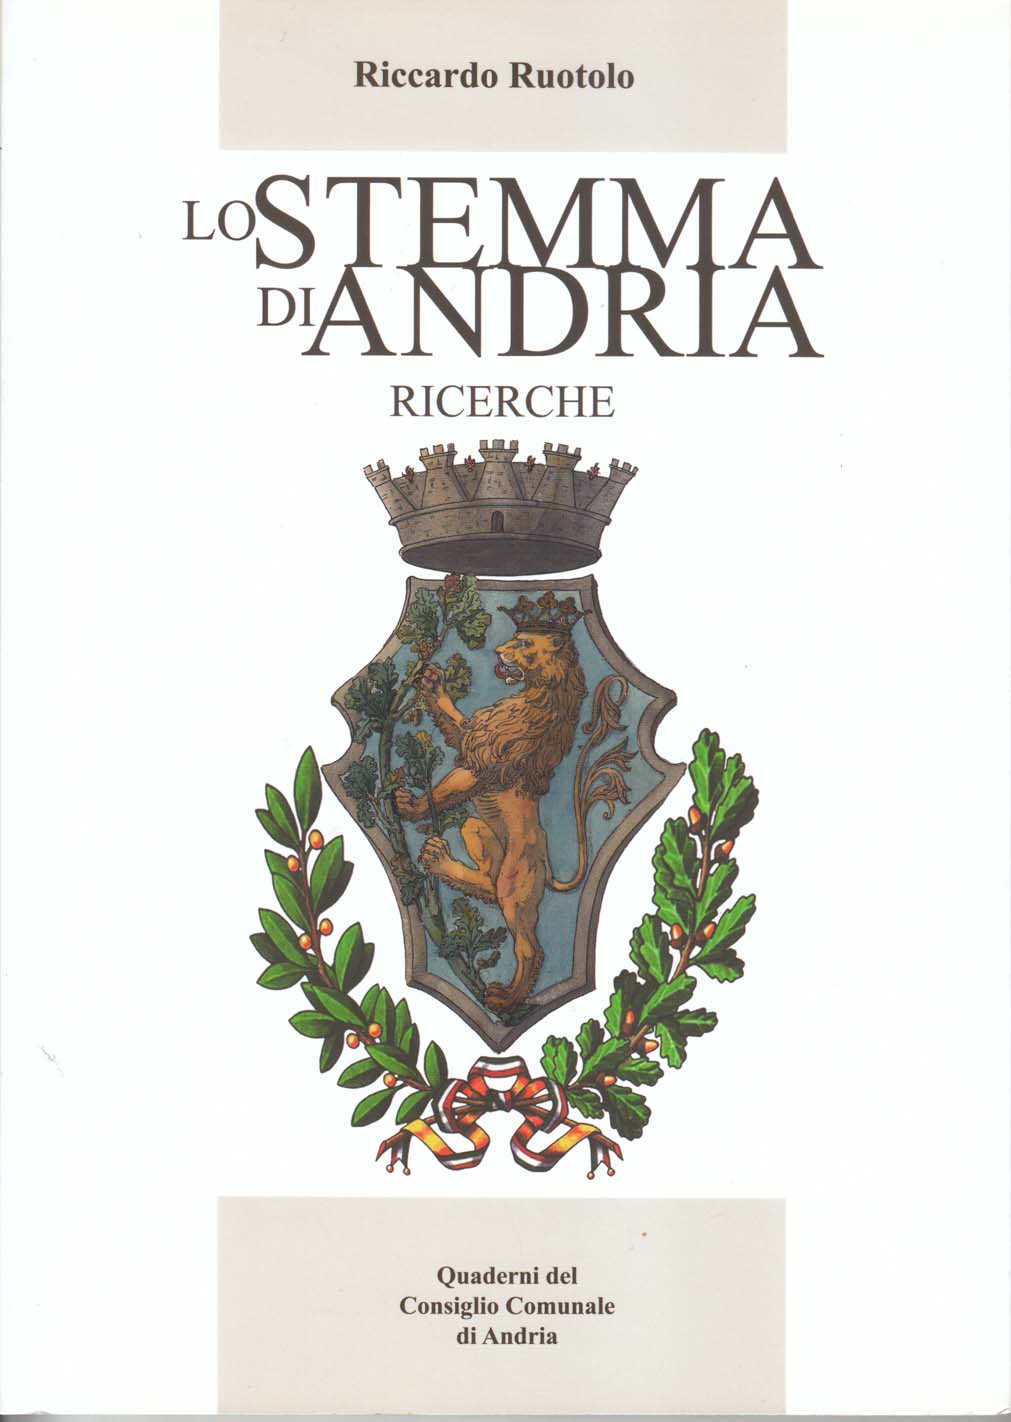 Lo stemma di Andria, ricerche di Riccardo Ruotolo